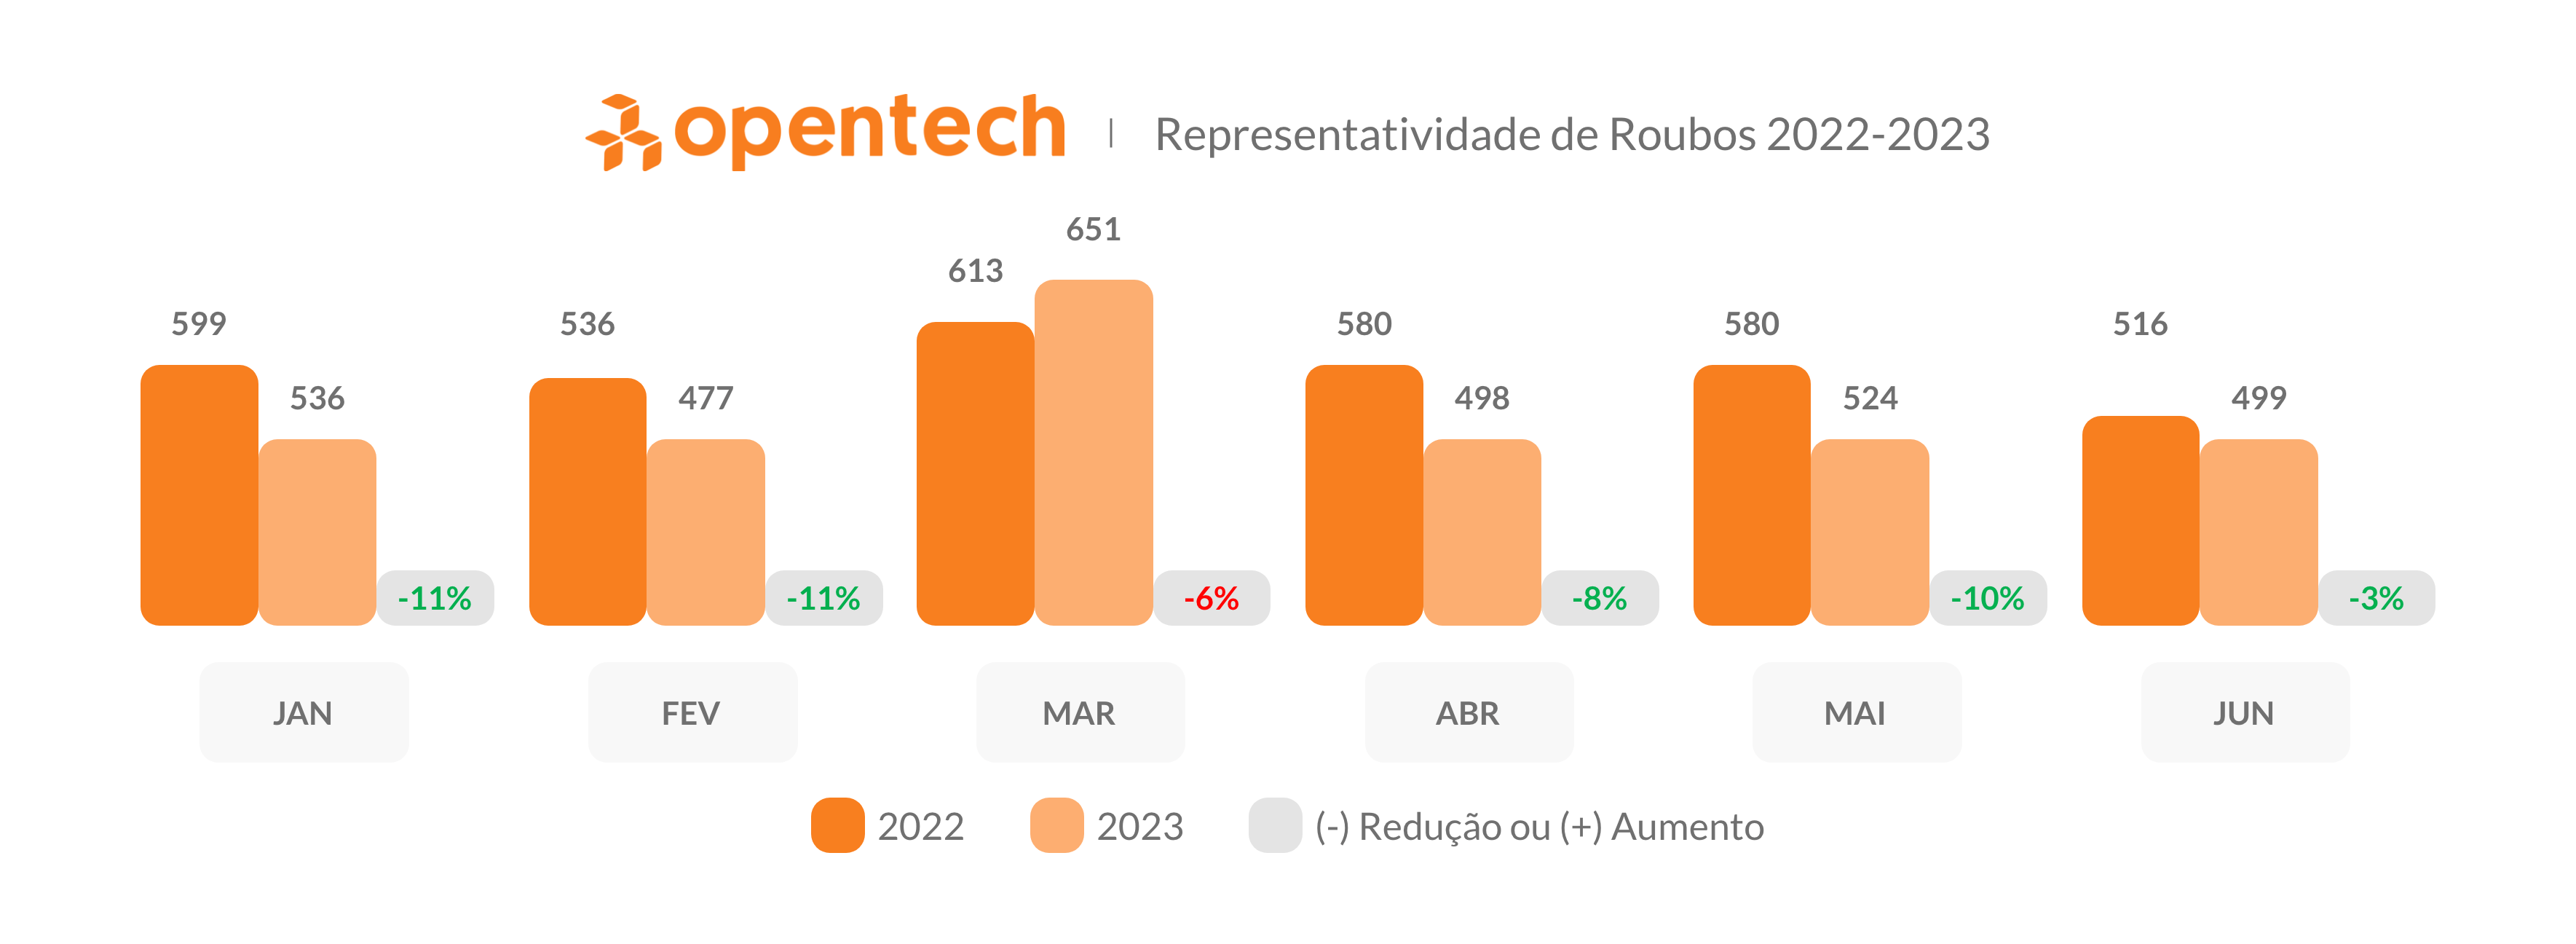 Representatividade de Roubos 2022-2023